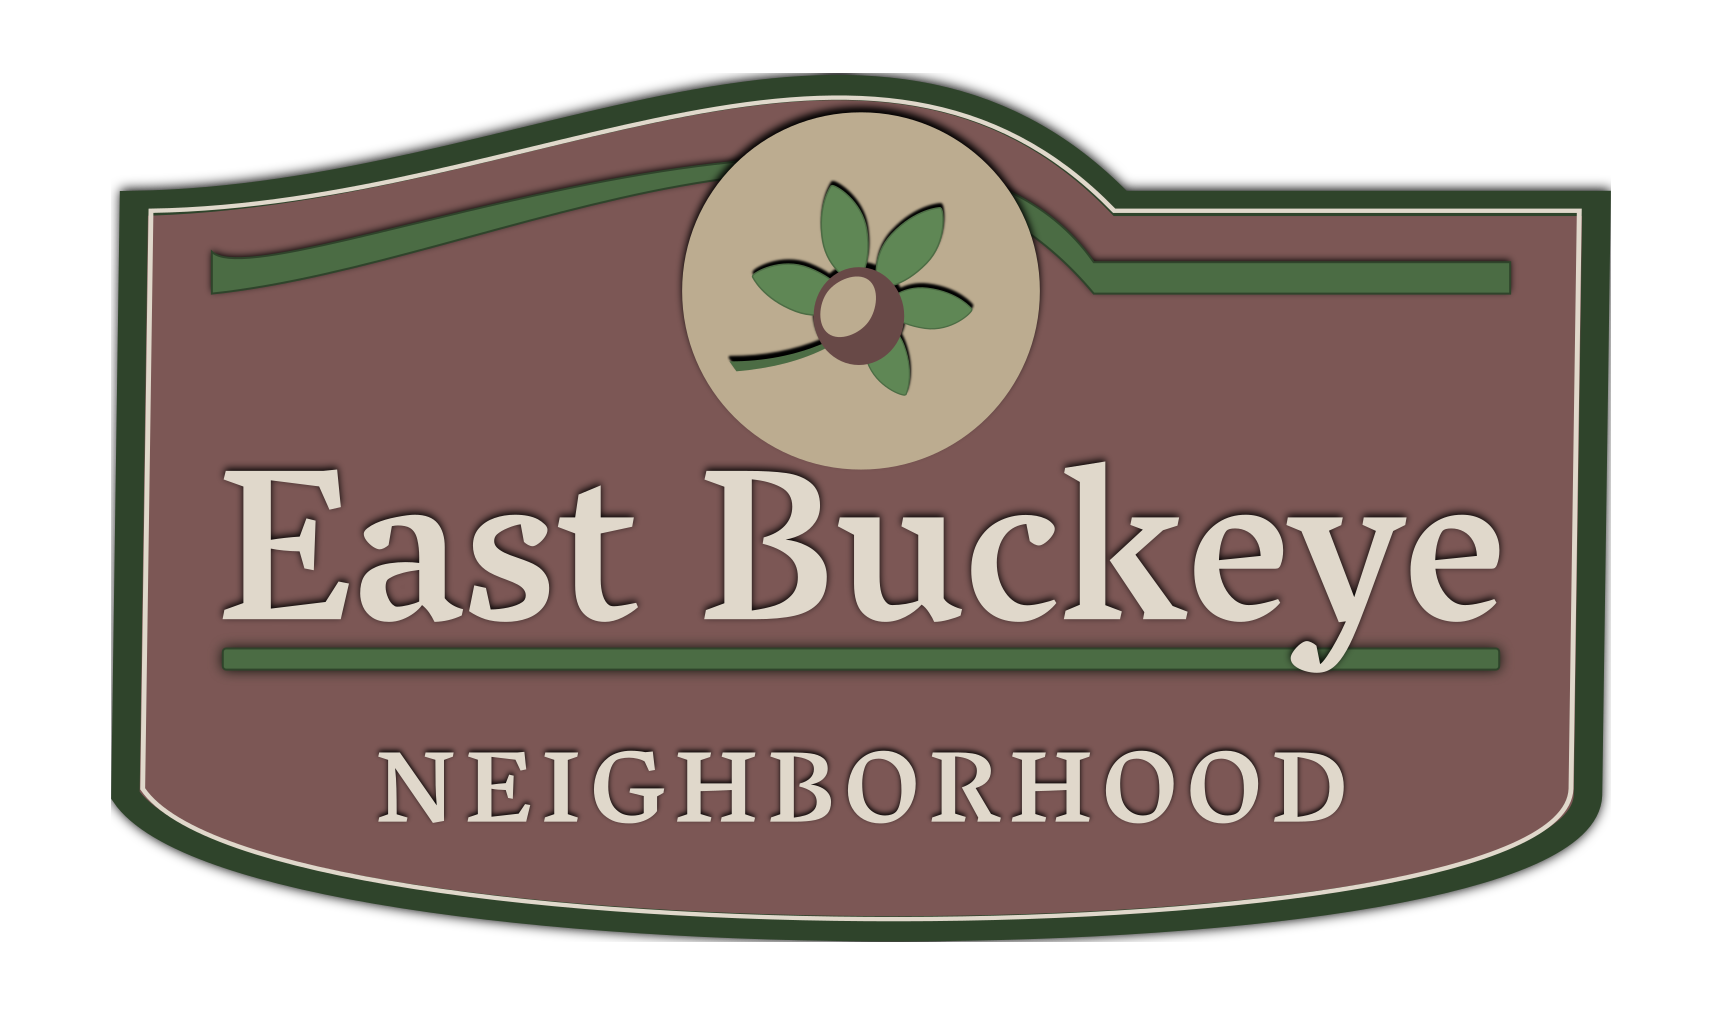 East Buckeye Neighborhood — Full of Winter Fun